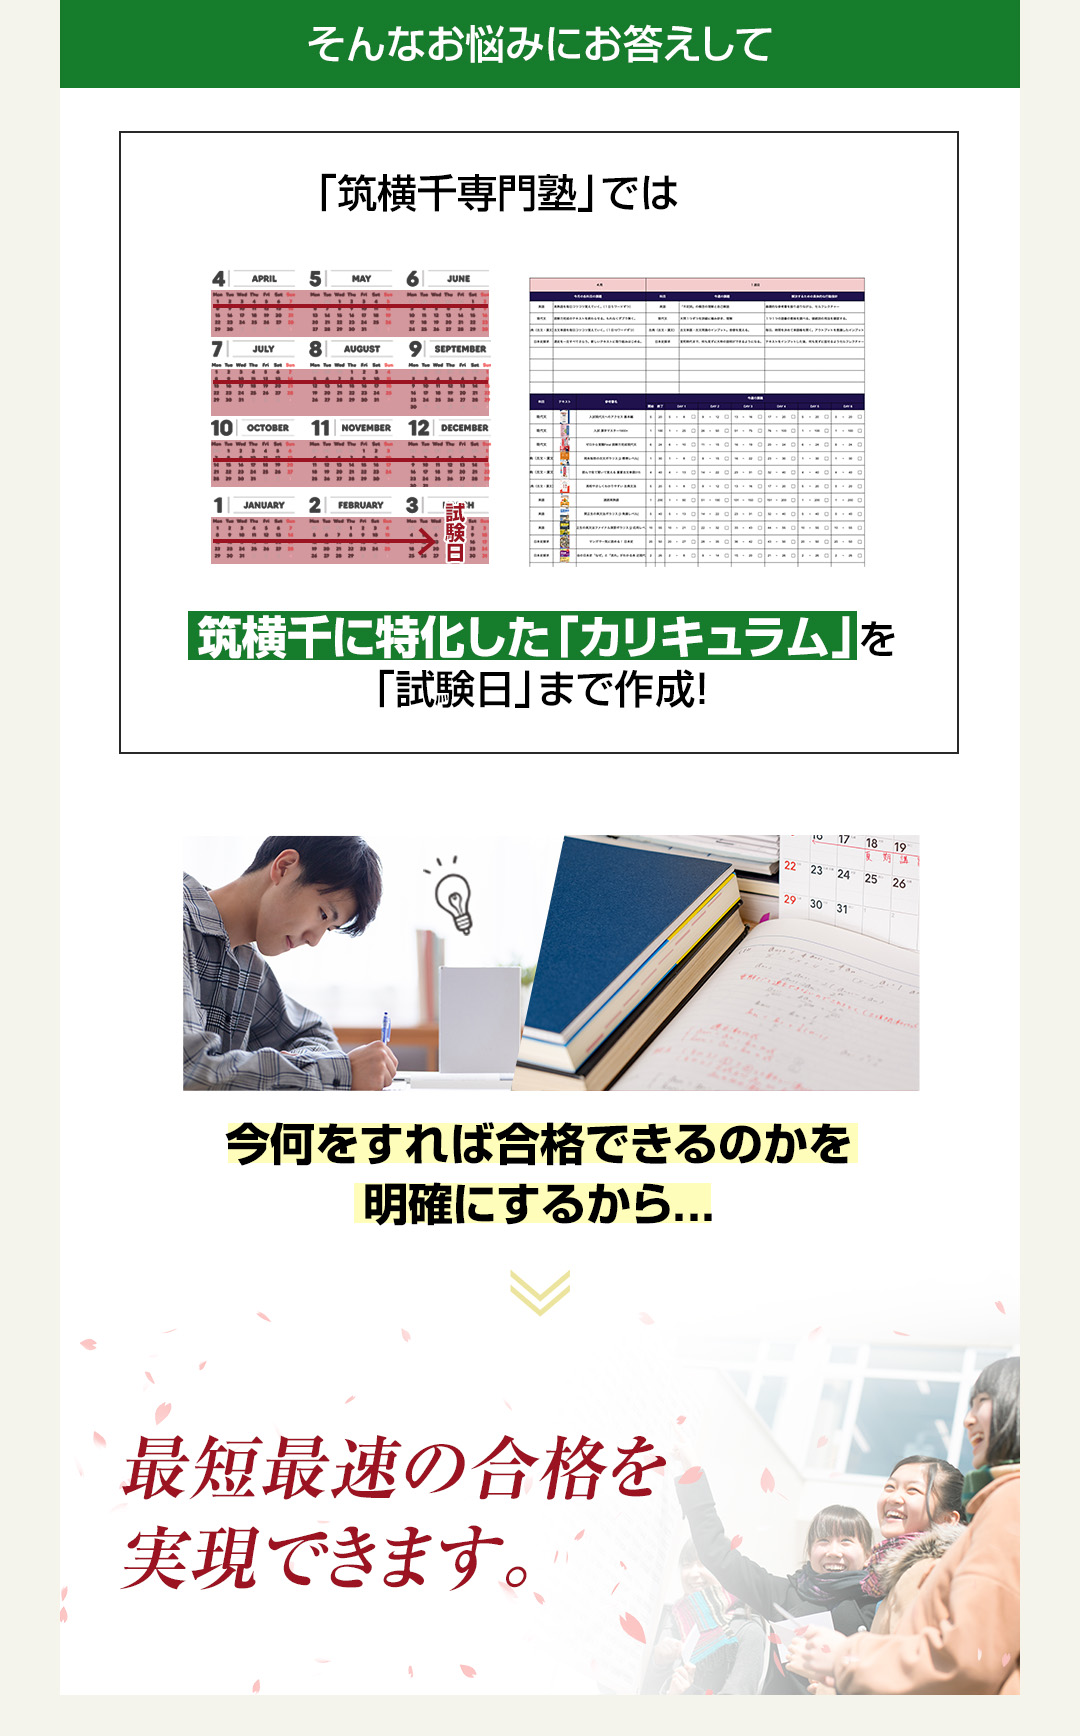 「筑横千専門塾」では筑横千に特化した「カリキュラム」を「試験日」まで作成